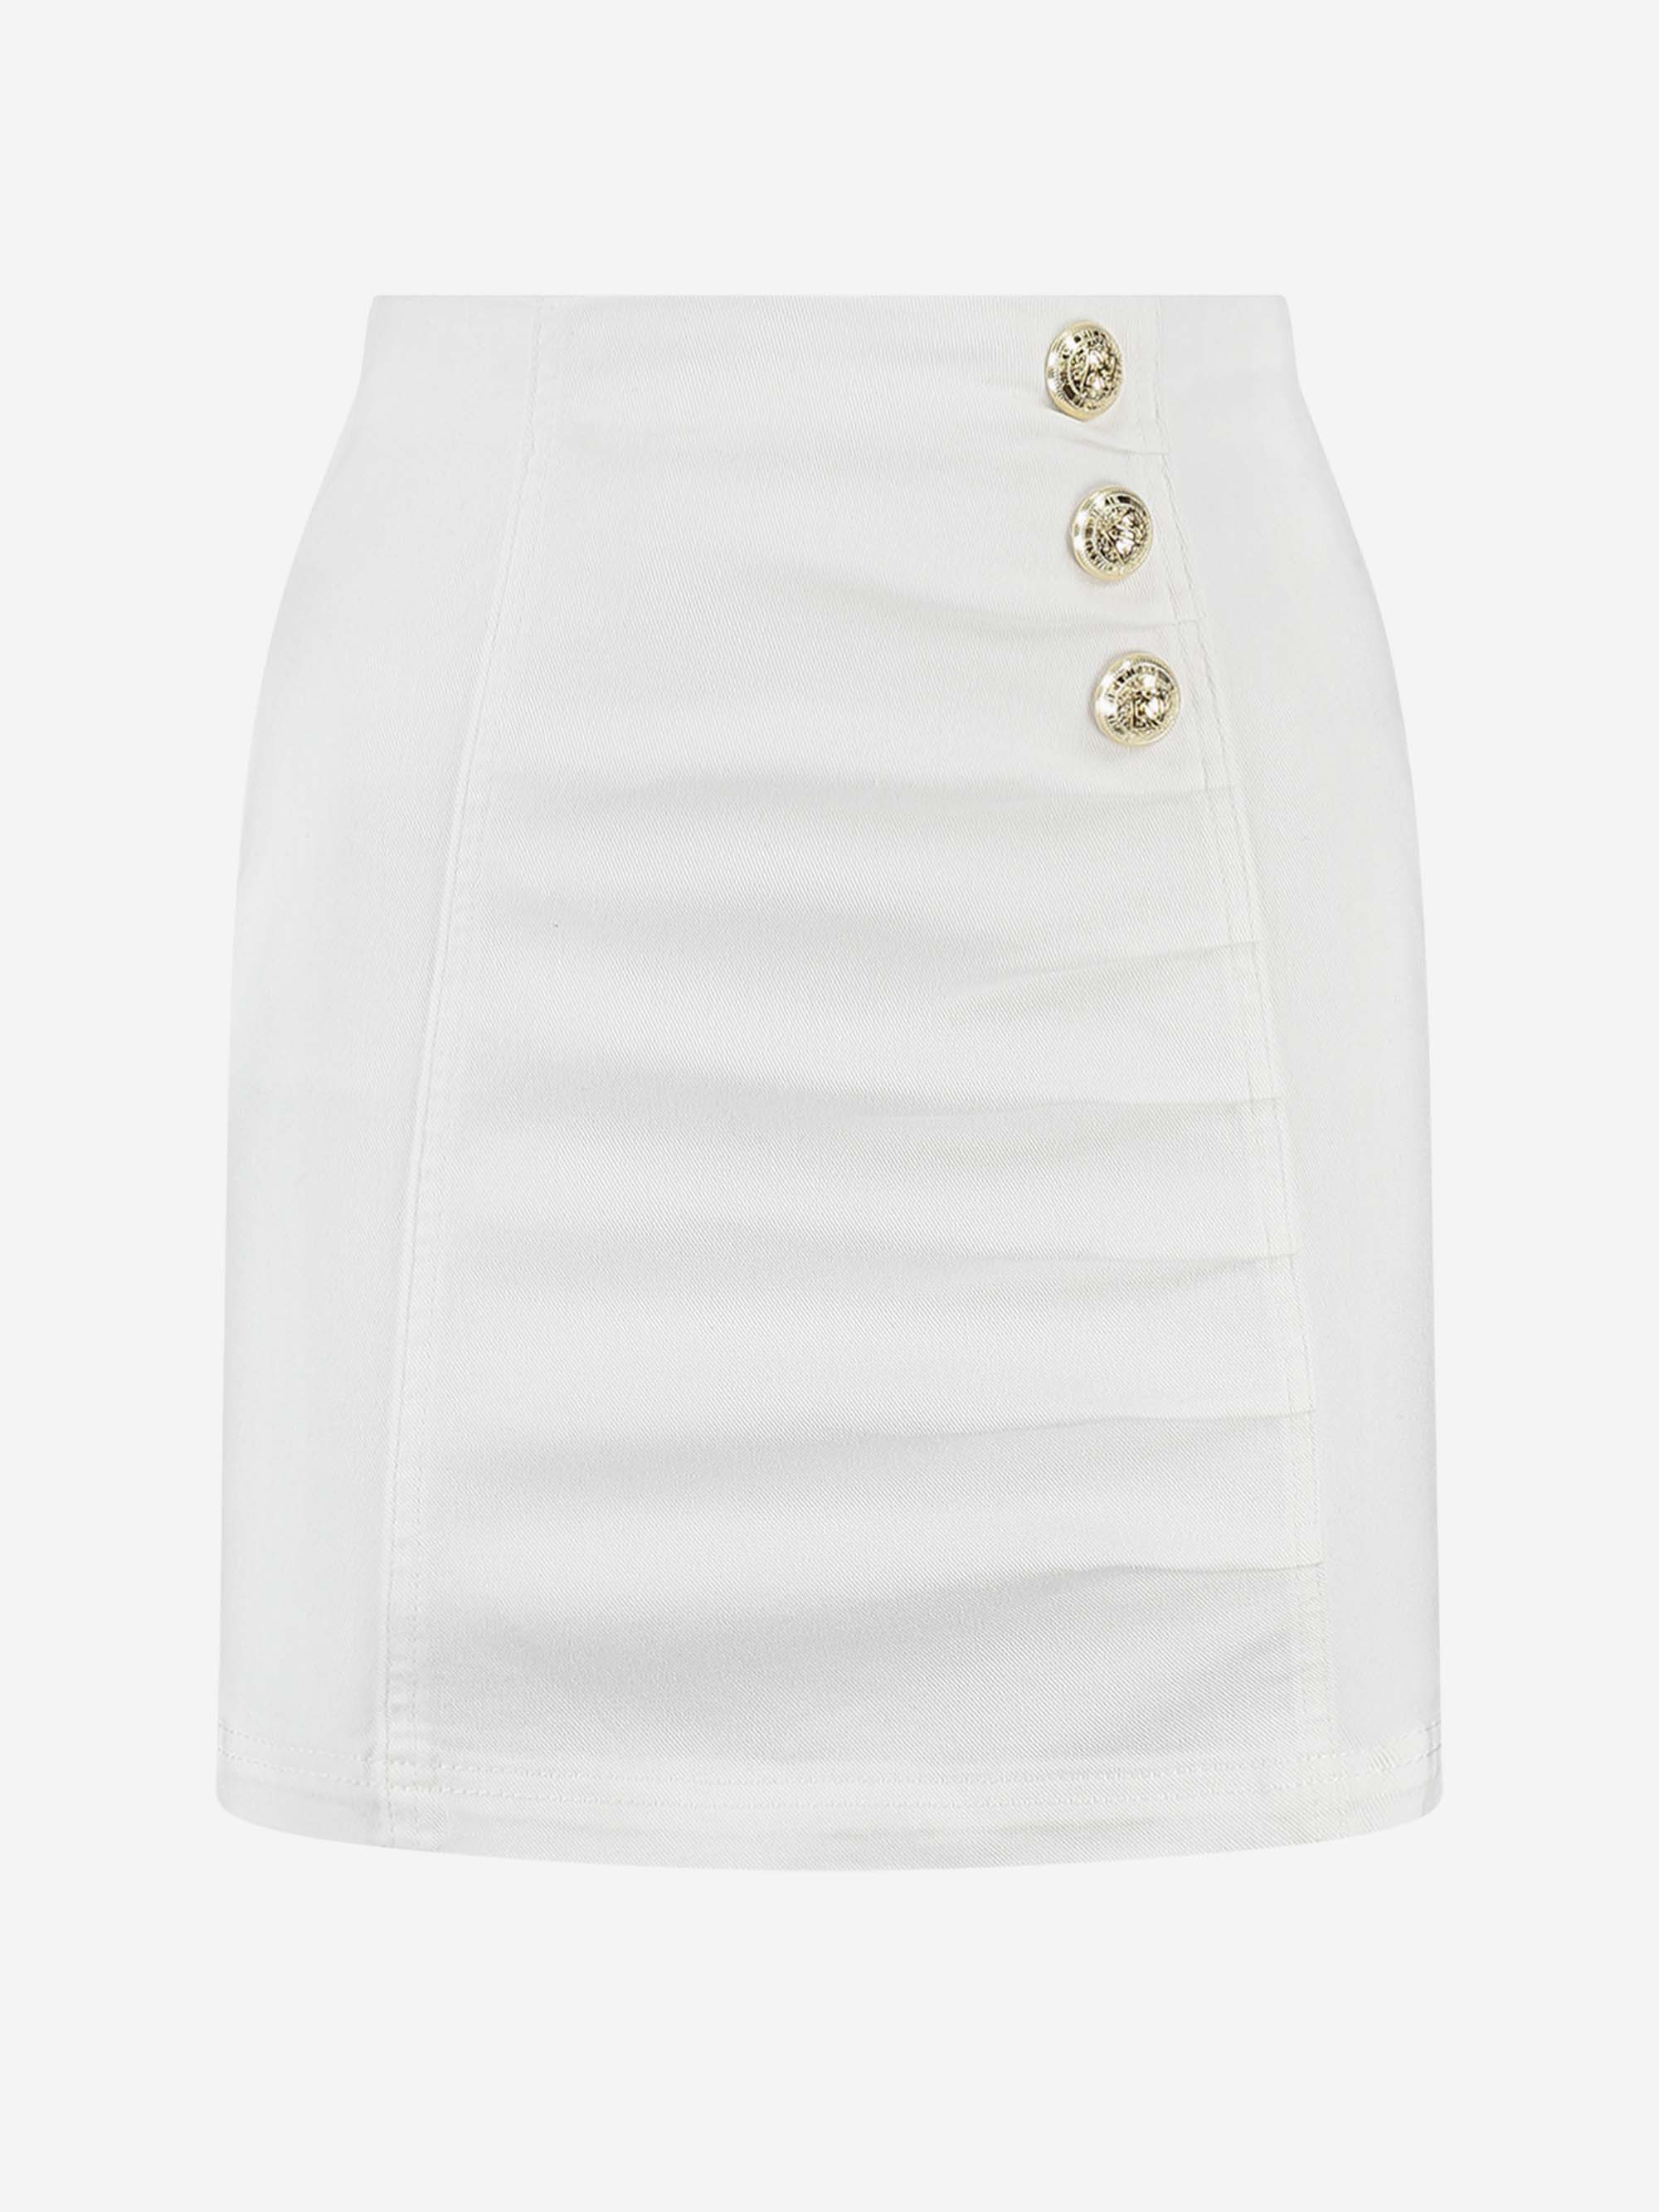 Bex White Skirt